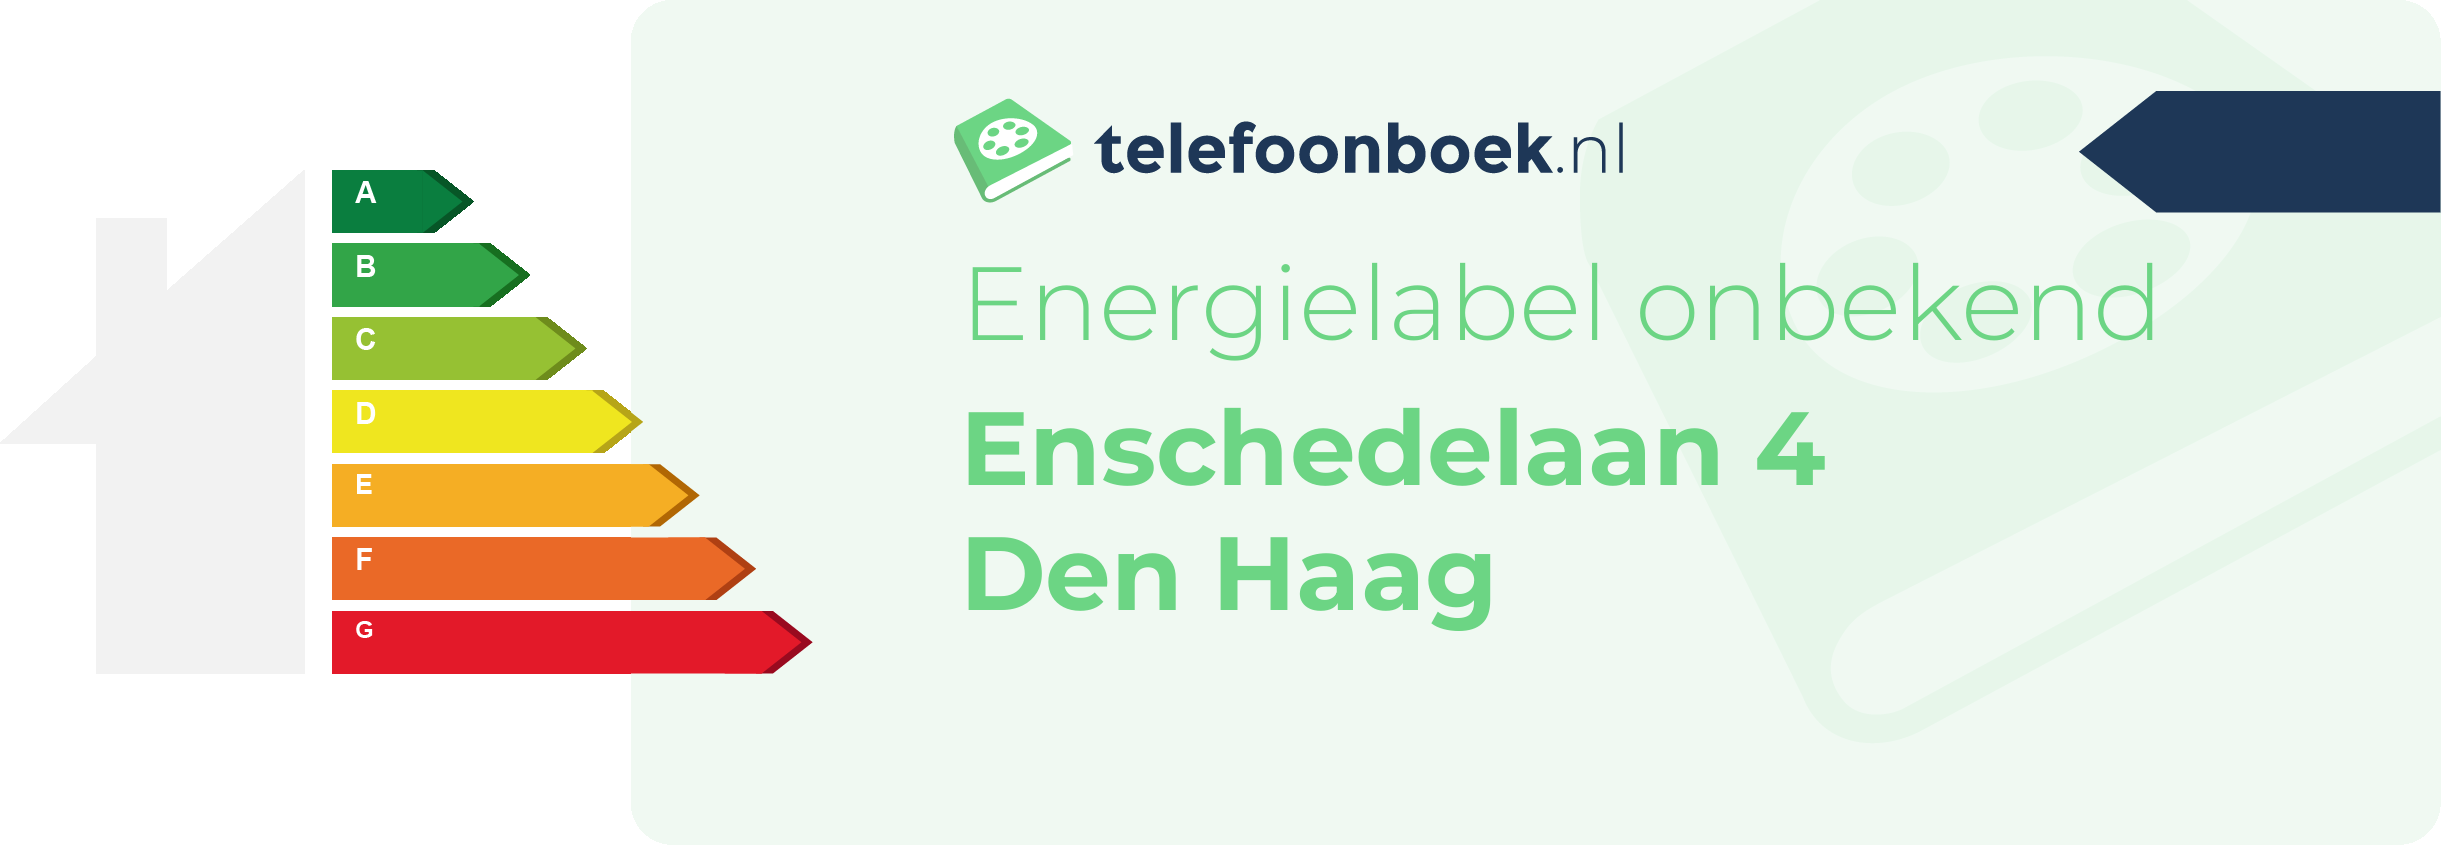 Energielabel Enschedelaan 4 Den Haag